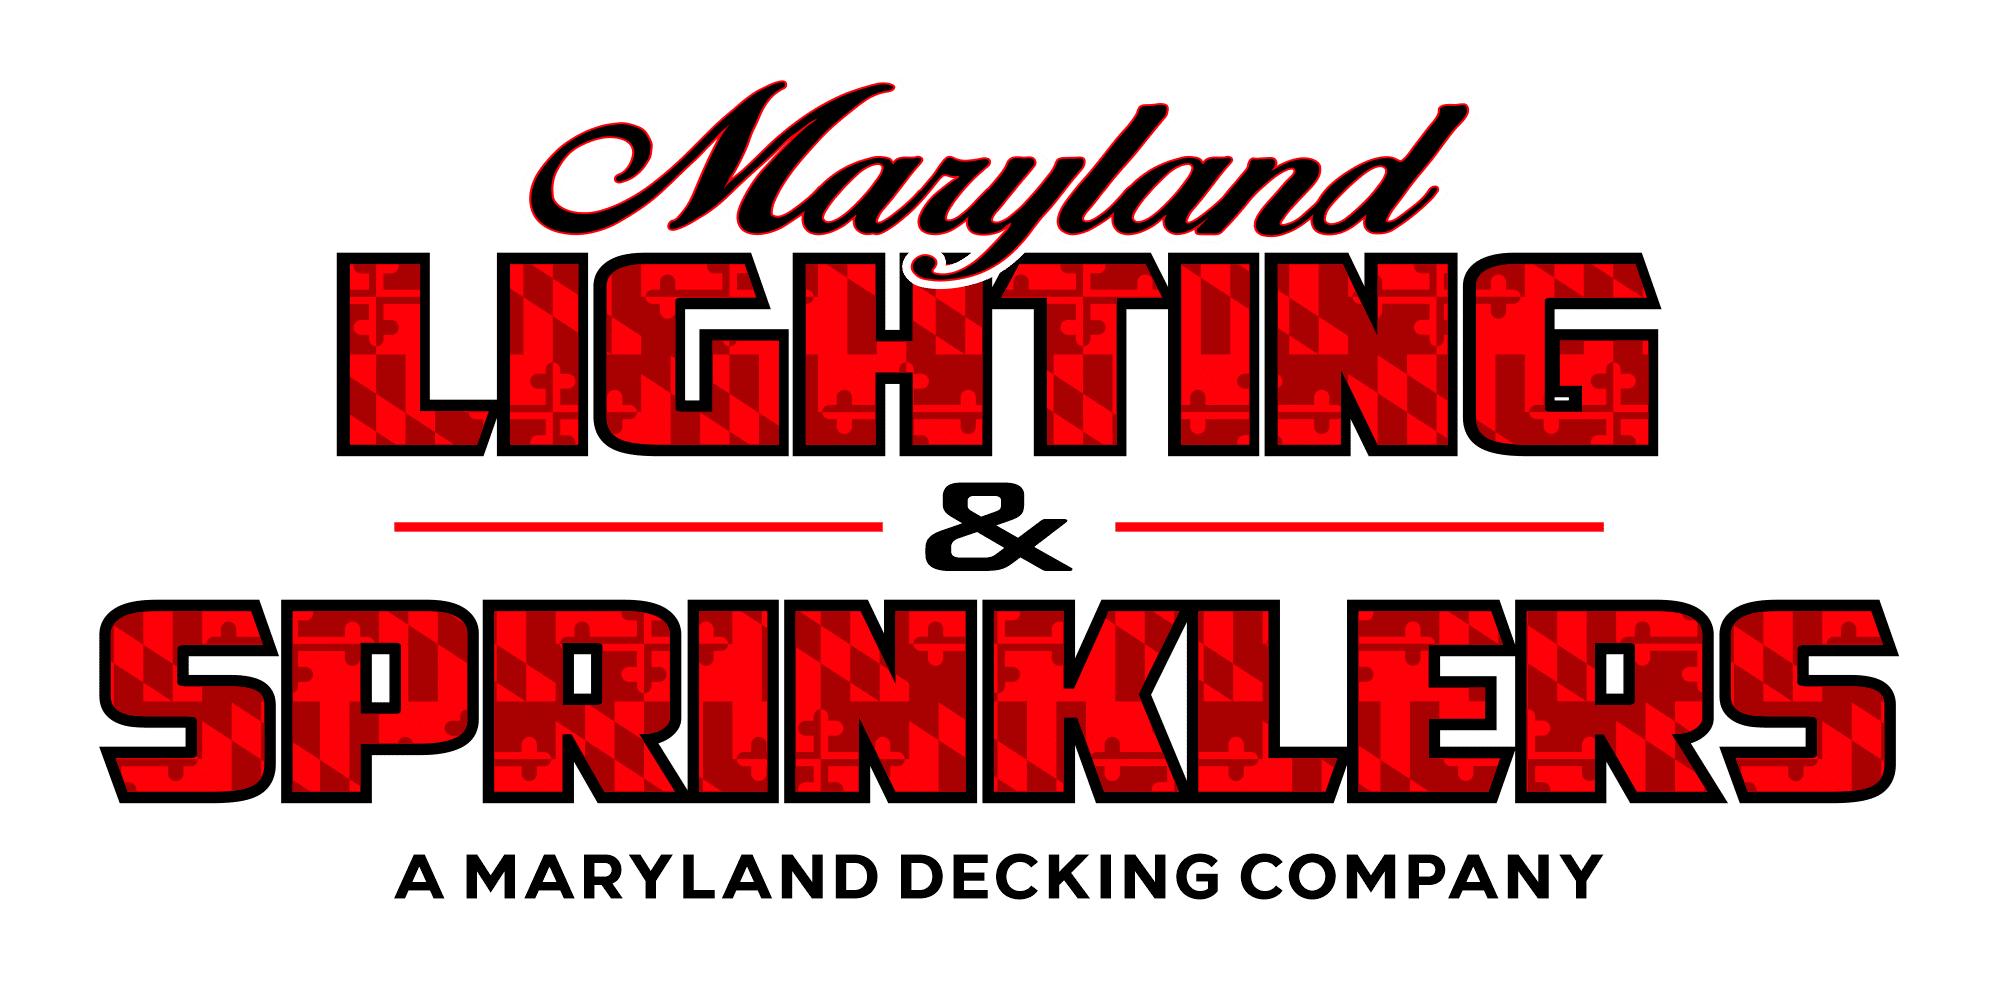 Maryland Lighting & Sprinkler Landscape Lighting and Sprinkler Services Company Logo